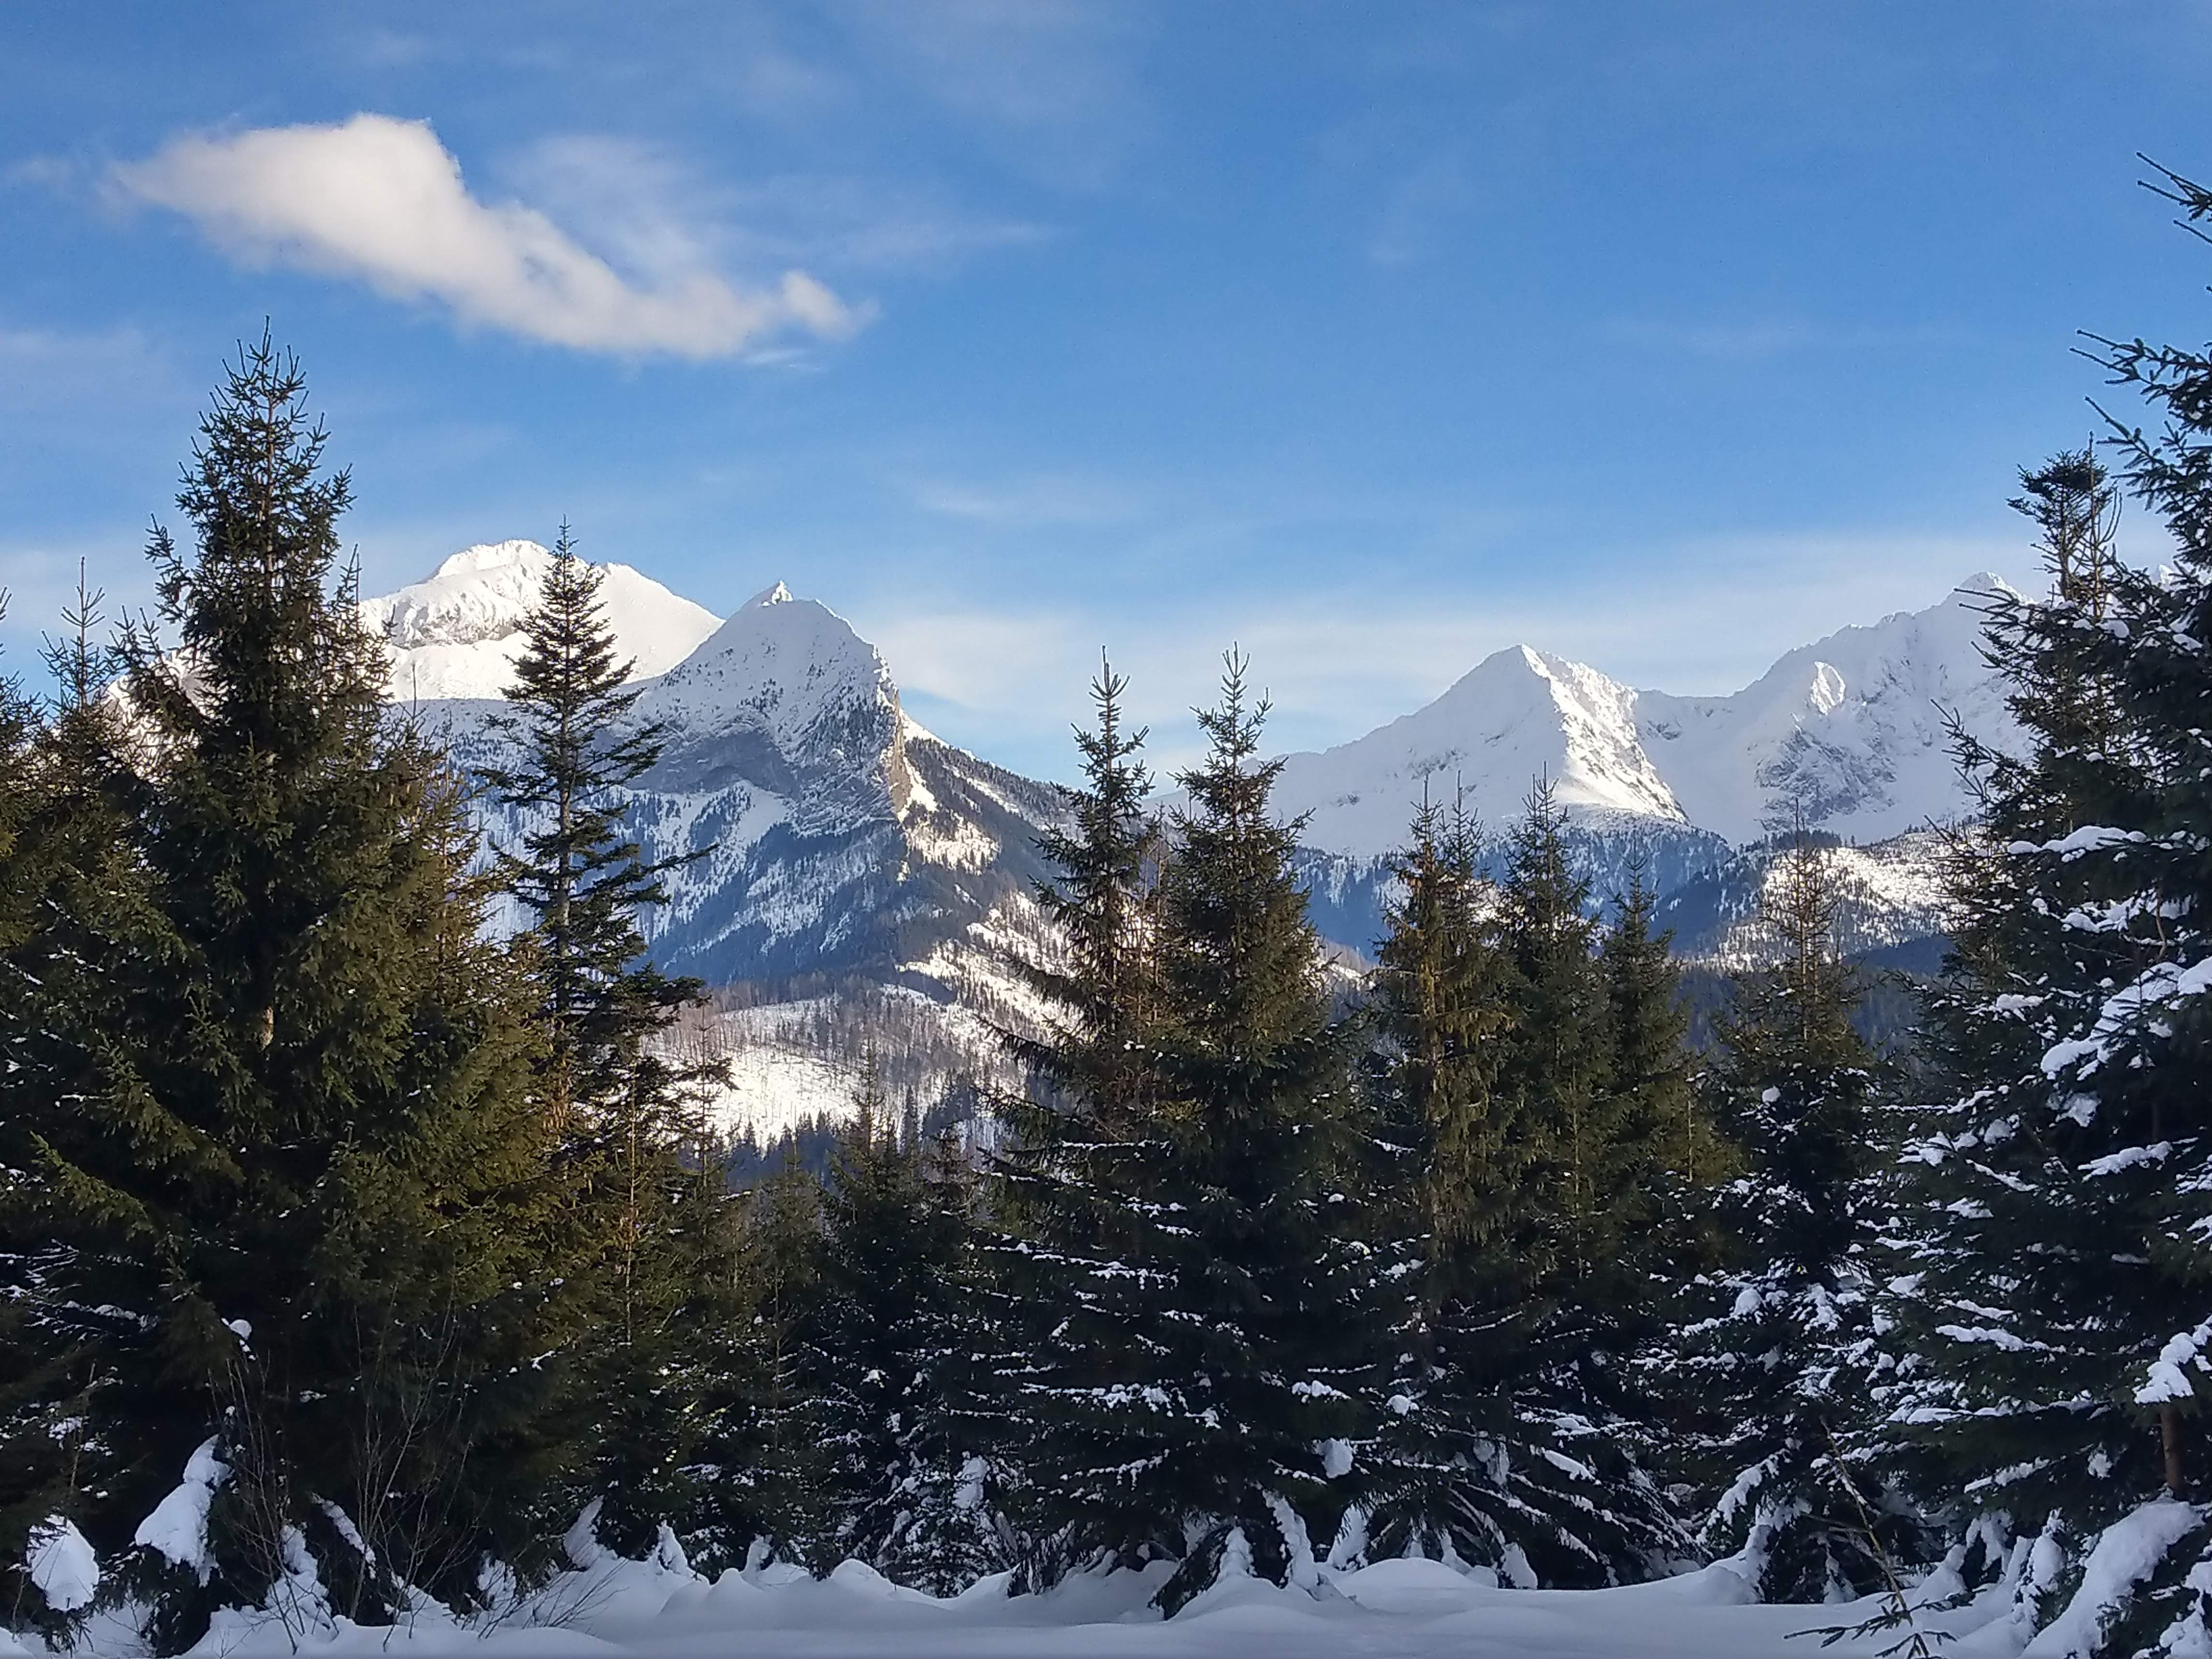 Zimowy pejzaż, na pierwszym planie drzewa iglaste, w tle ośnieżone góry, jasne niebo z kilkoma chmurami